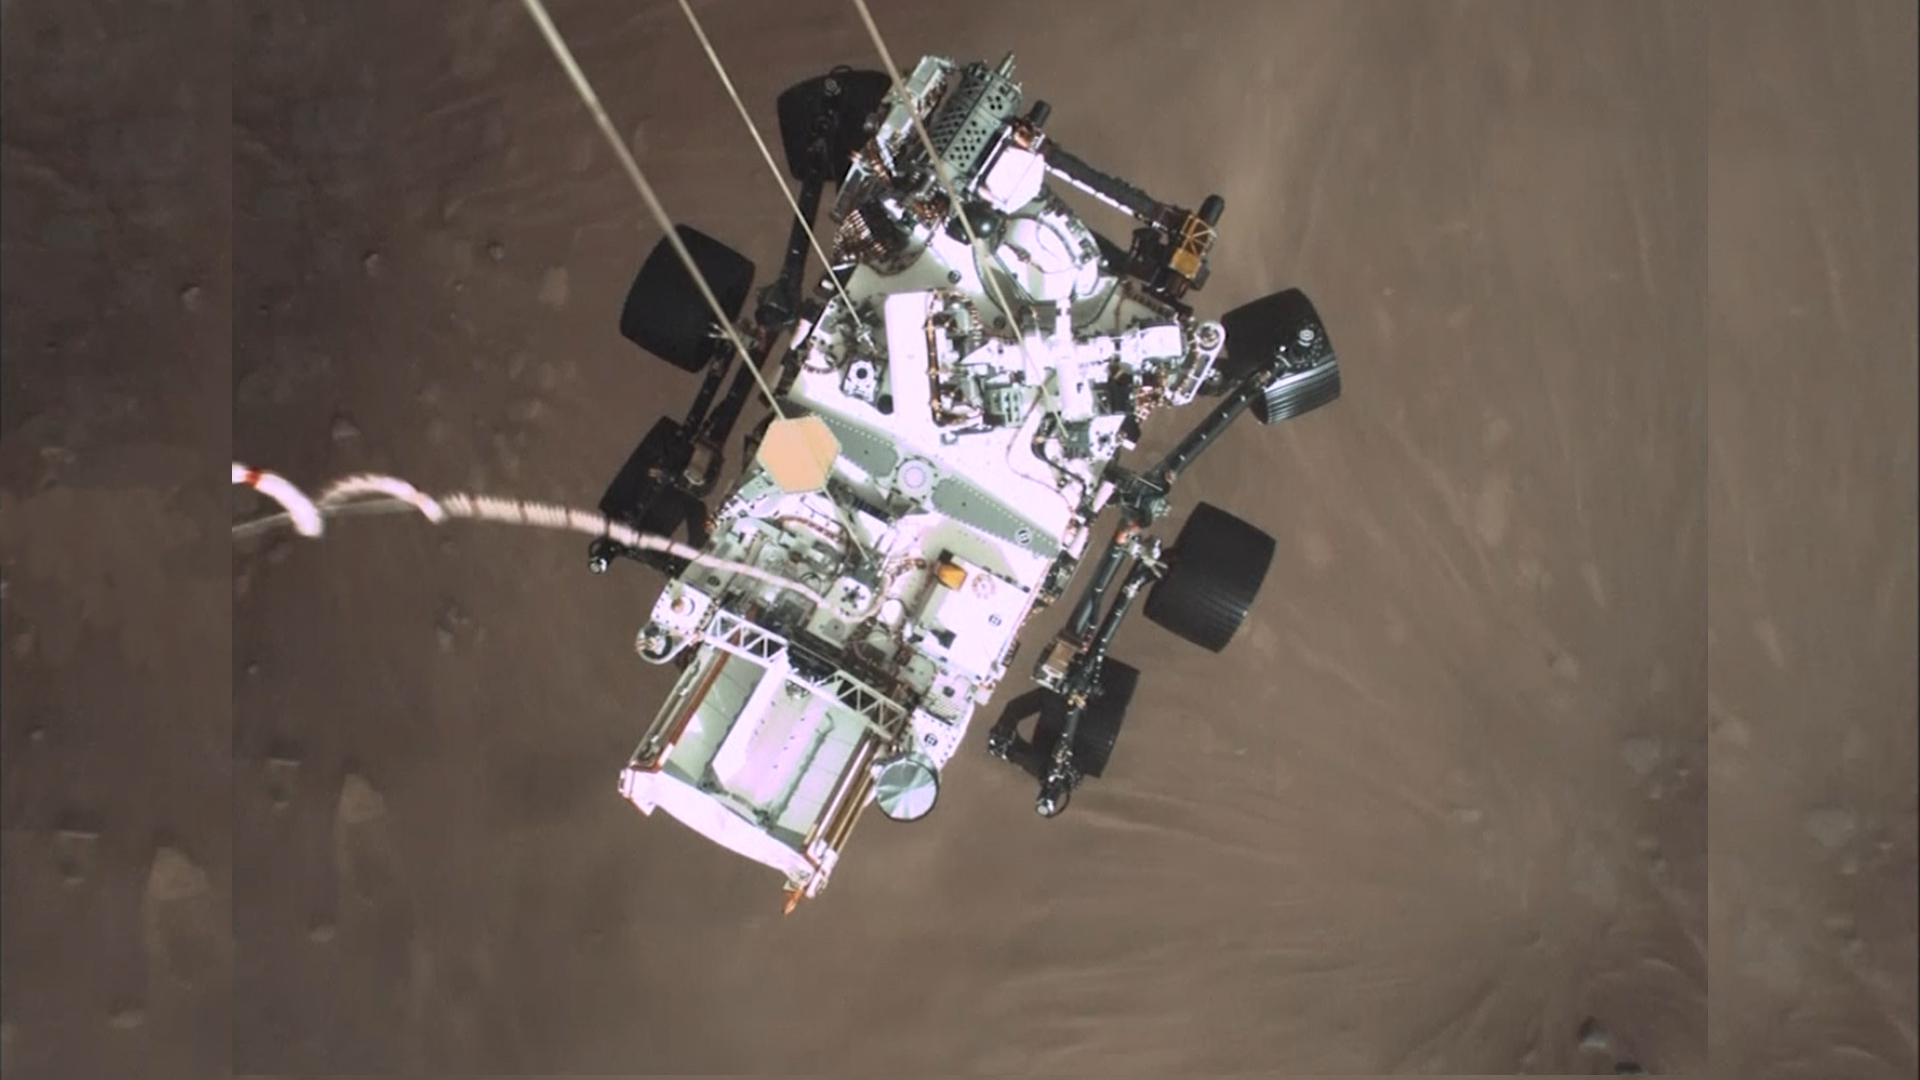 NASA's rover